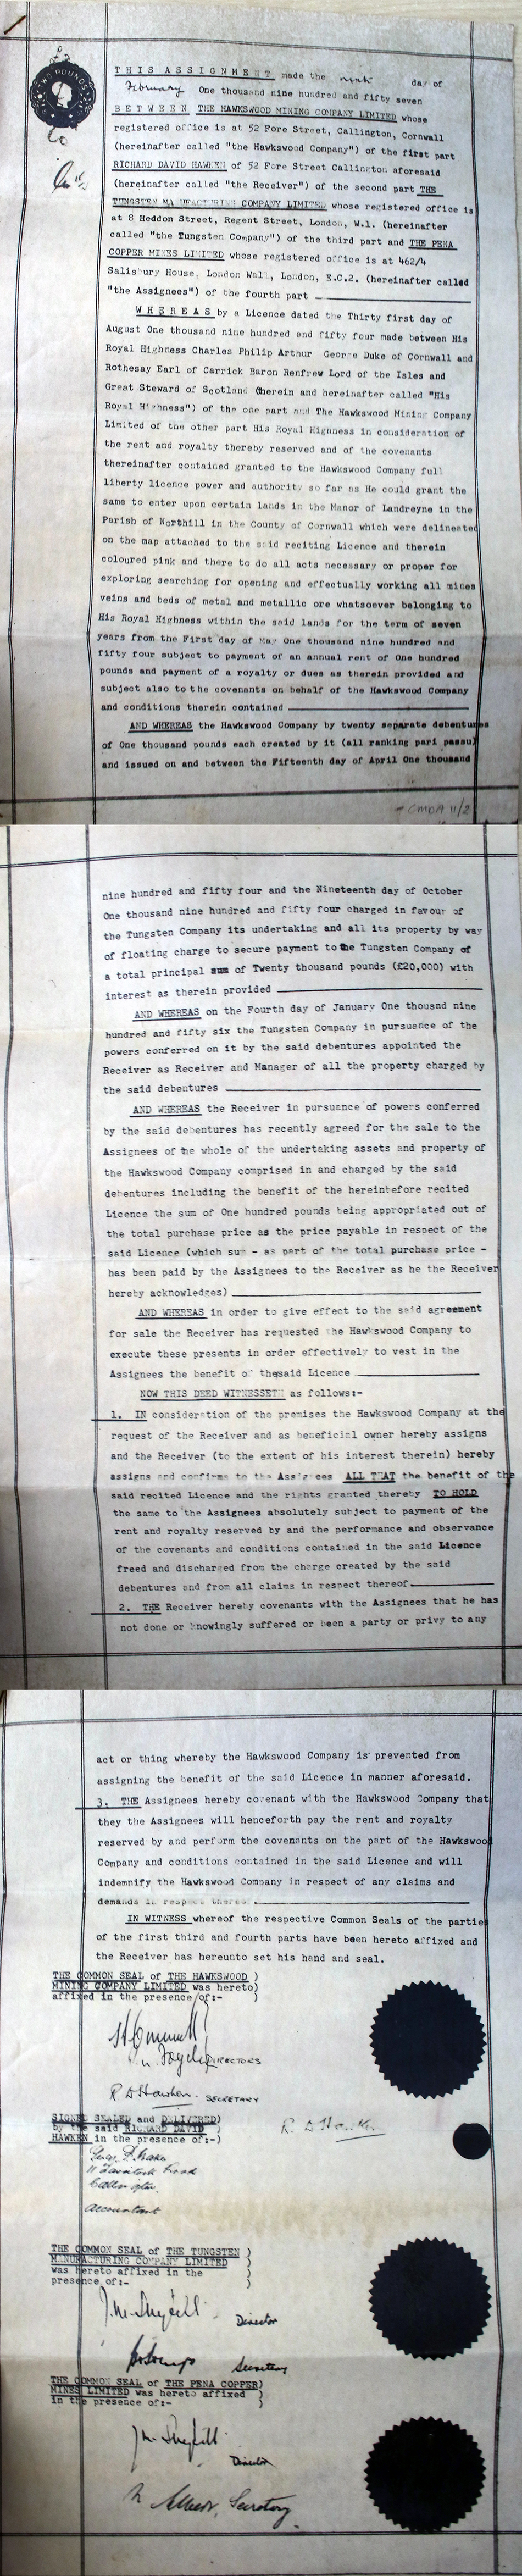 1957 Hawkswood Mine Agreement